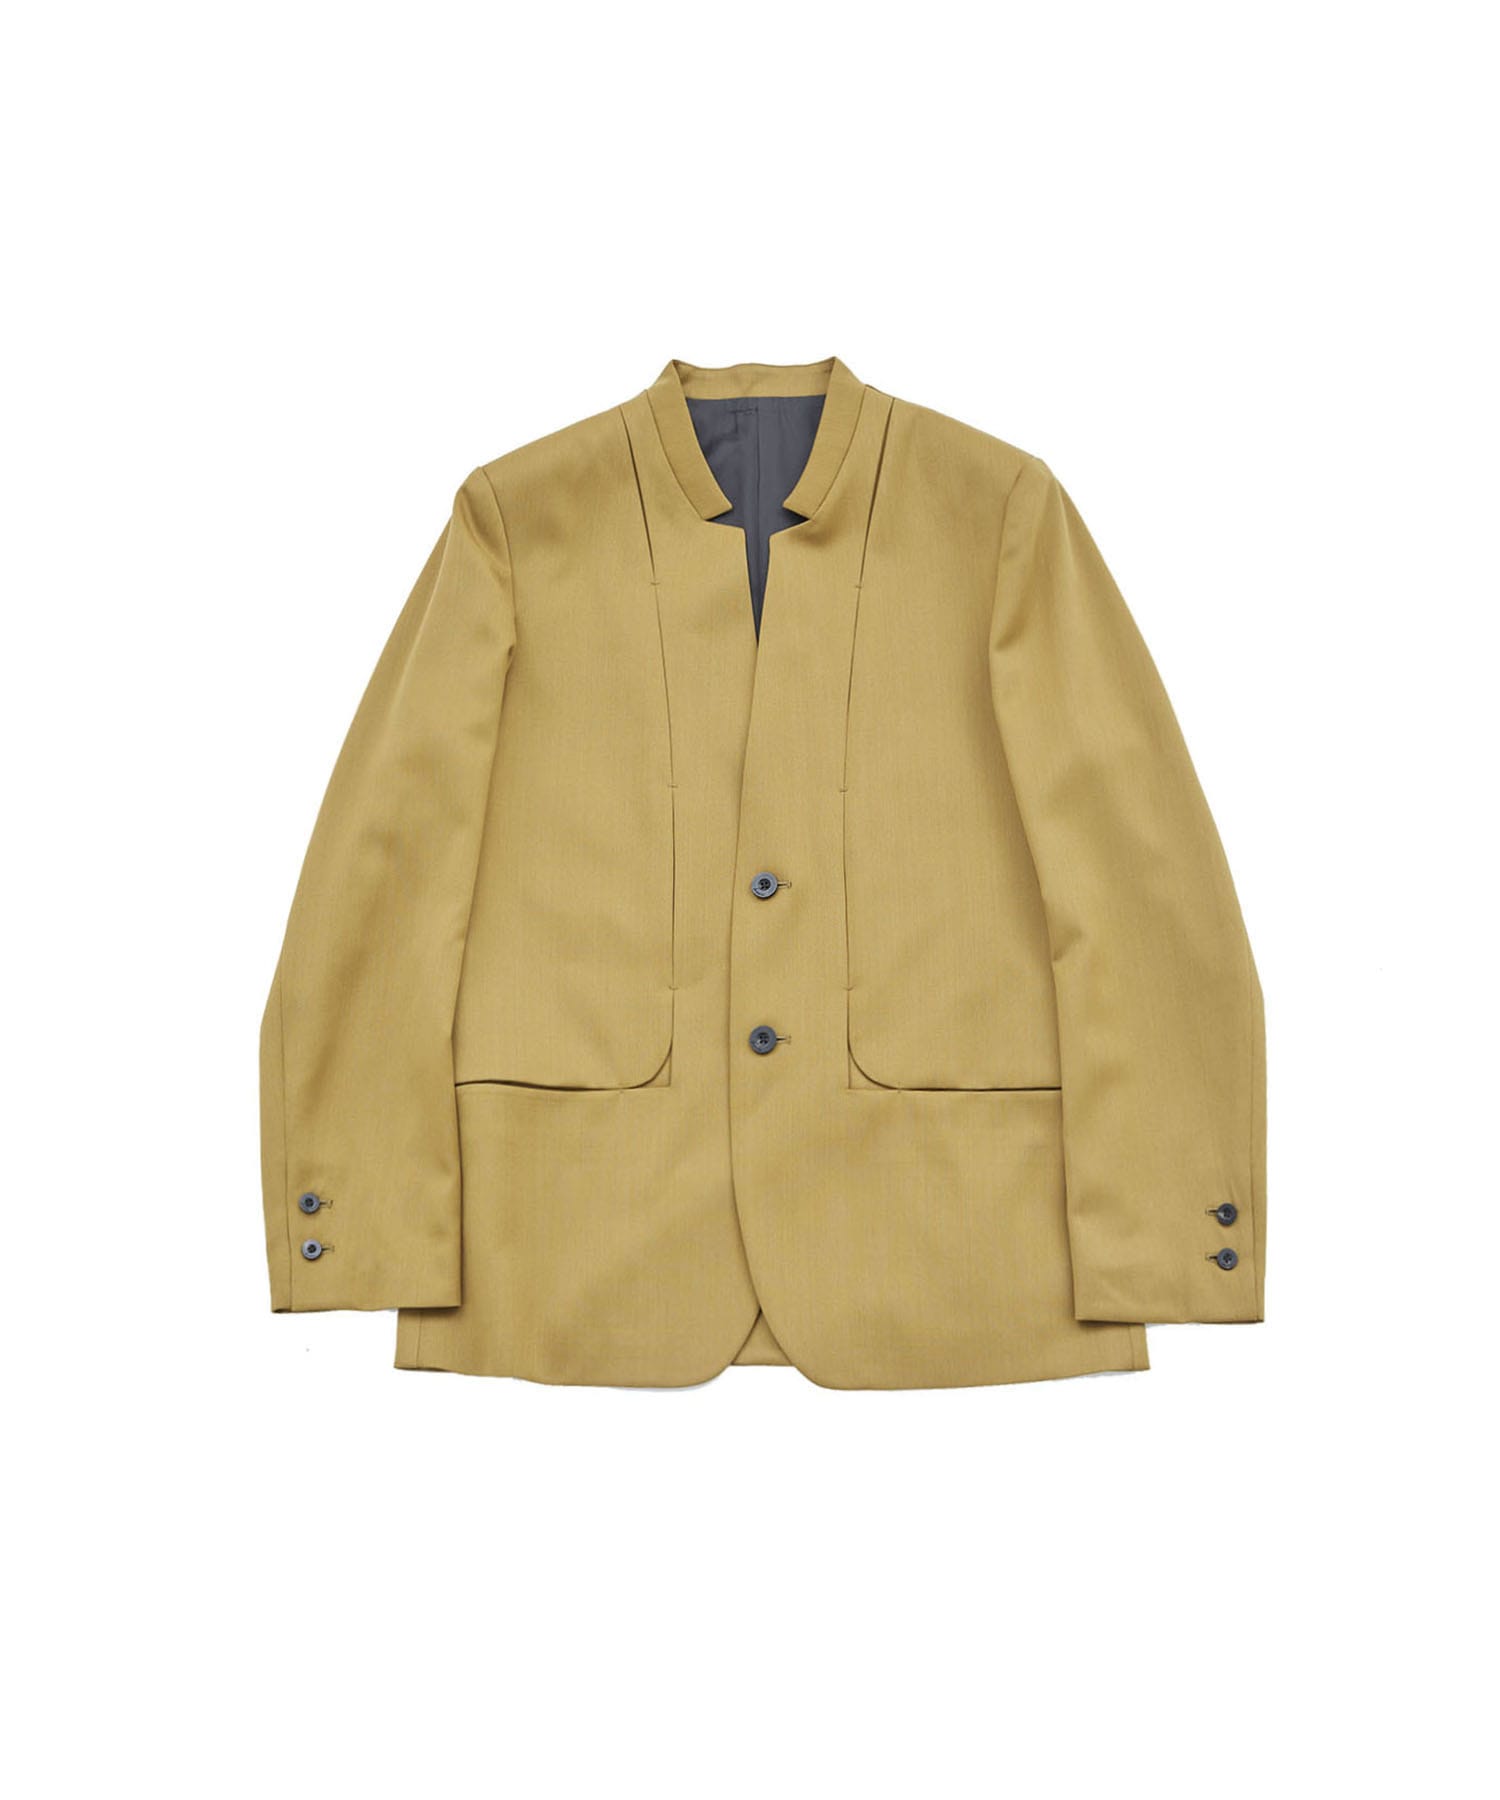 IC Collection Shirring Blouson Sleeve Shirring Jacket Style 8420J